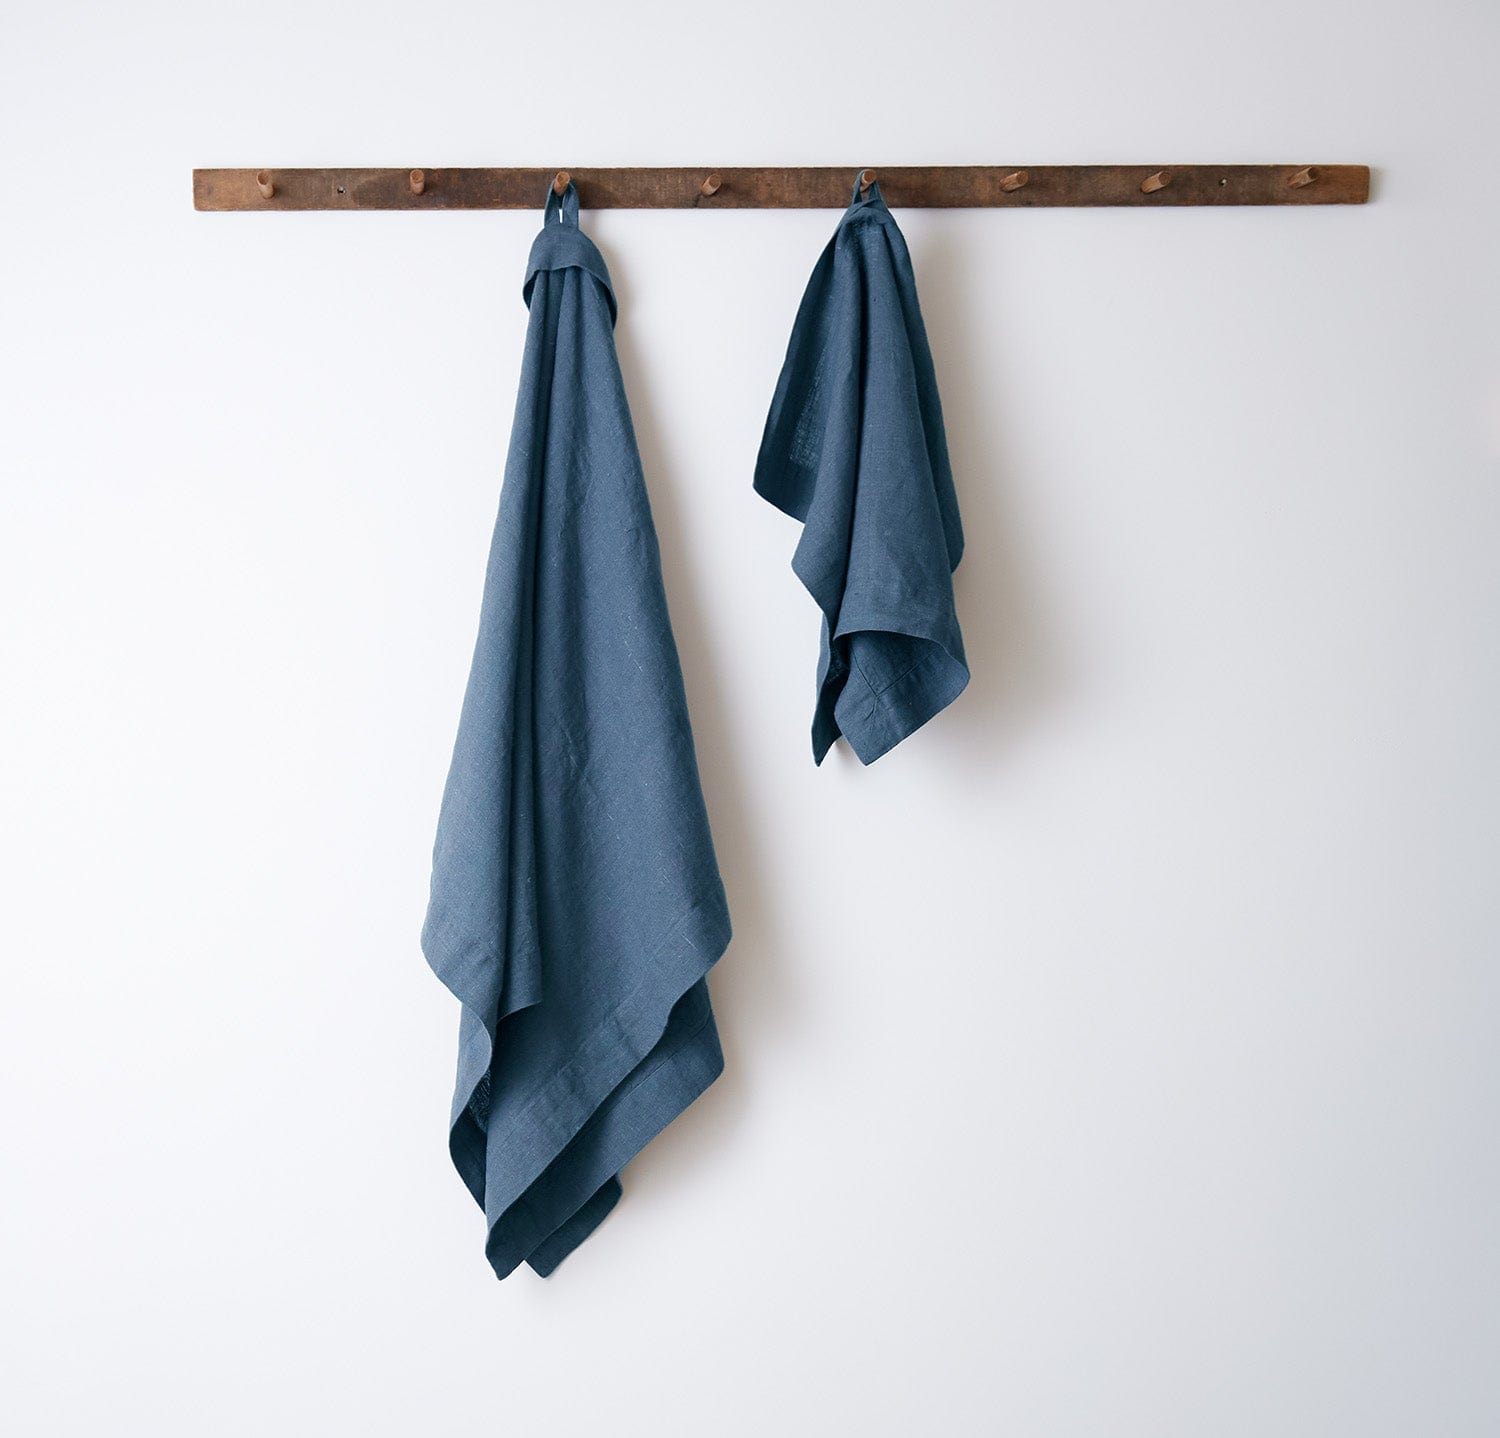 Olga Linen Bath Towels  ANICHINI Striped Flatweave Linen Towels